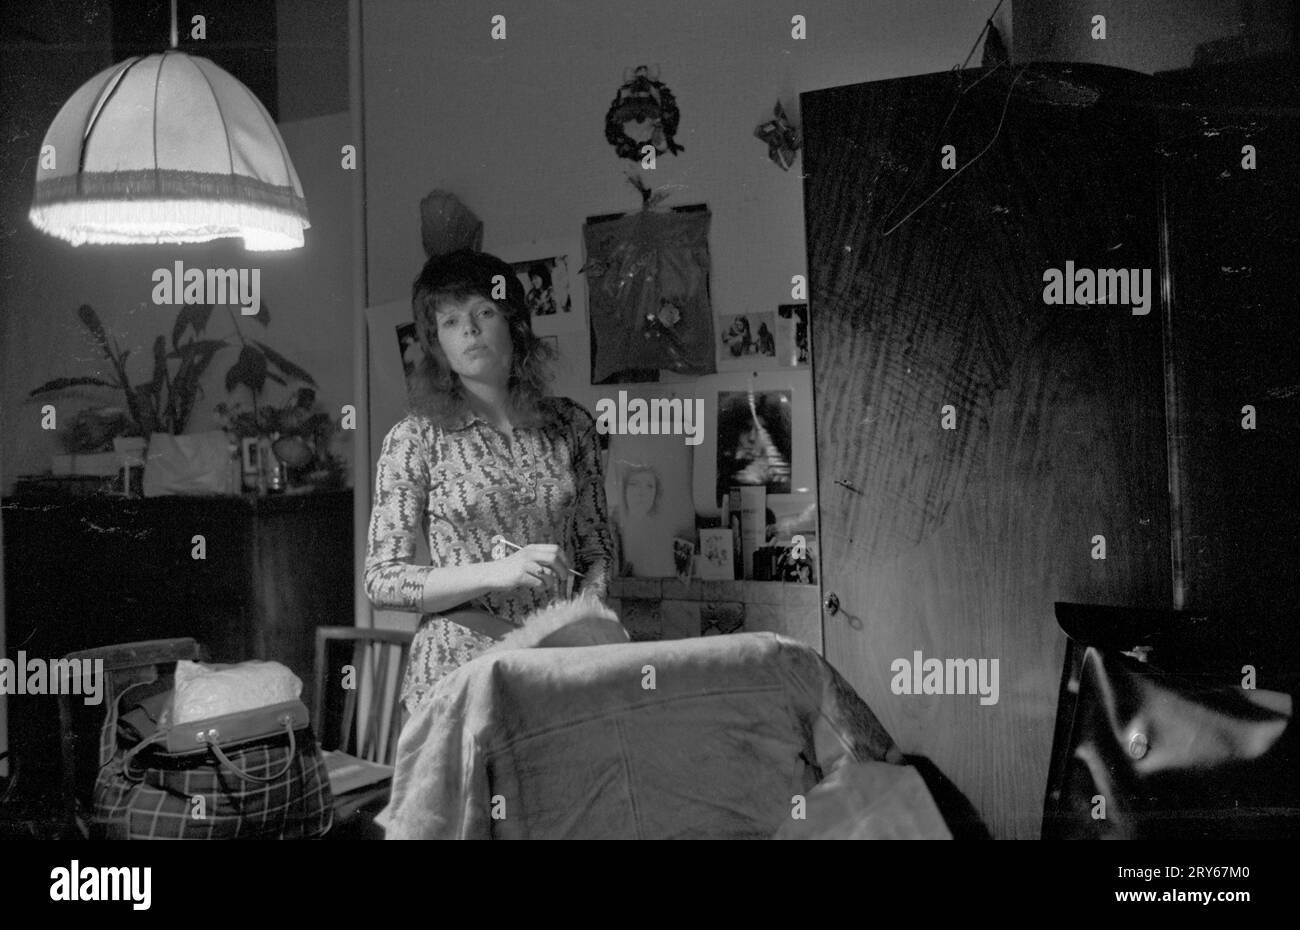 Giovane donna 1970s Londra una studentessa che vive in un alloggio economico. 1971 Westbourne Grove, Londra Regno Unito. HOMER SYKES Foto Stock